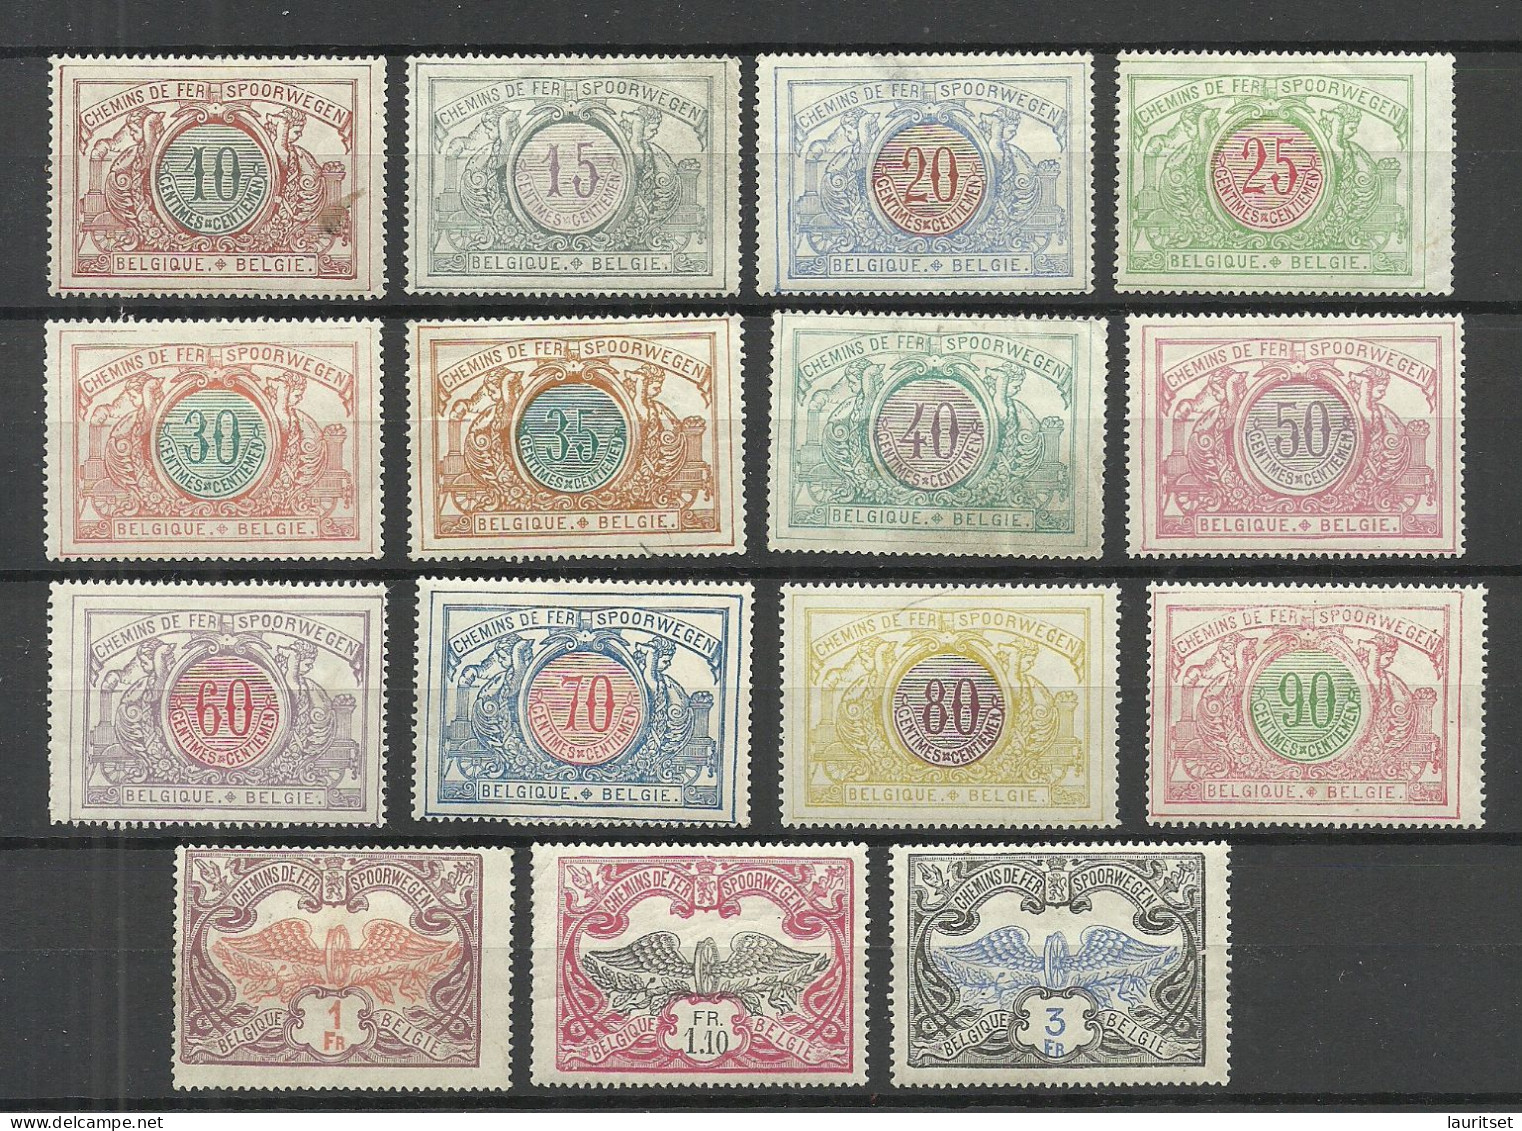 BELGIEN Belgium Belgique 1902-1906 Michel 28 - 42 * Railway Packet Stamps Eisenbahnpaketmarken NB! READ! - Nuovi